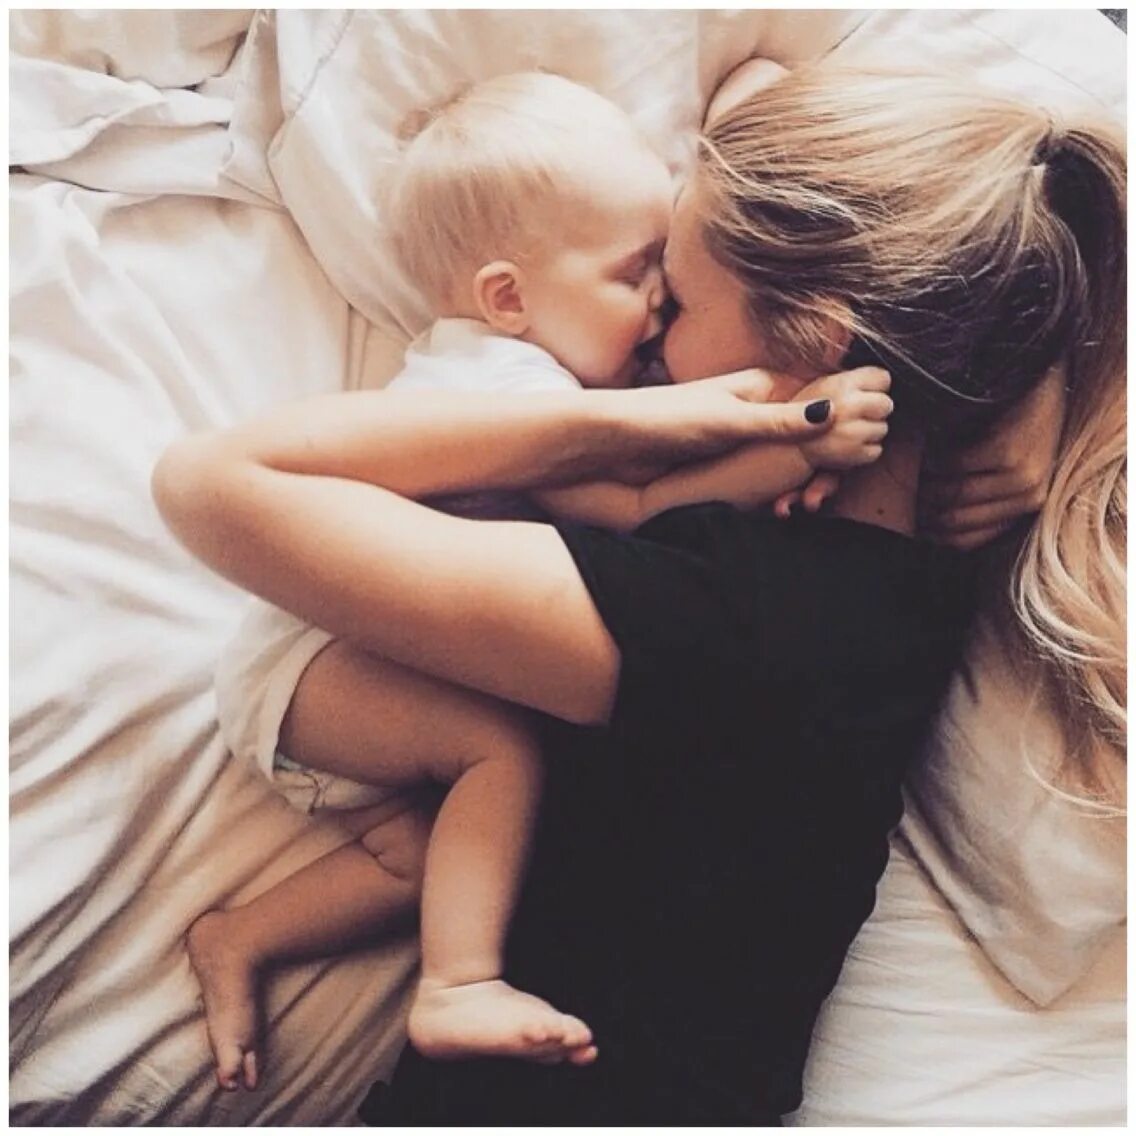 Мама блондинка с малышом. Фотосессия мама с младенцем. Блондинка с ребенком на руках. Объятия мамы и ребенка. Сын увидел молодую маму